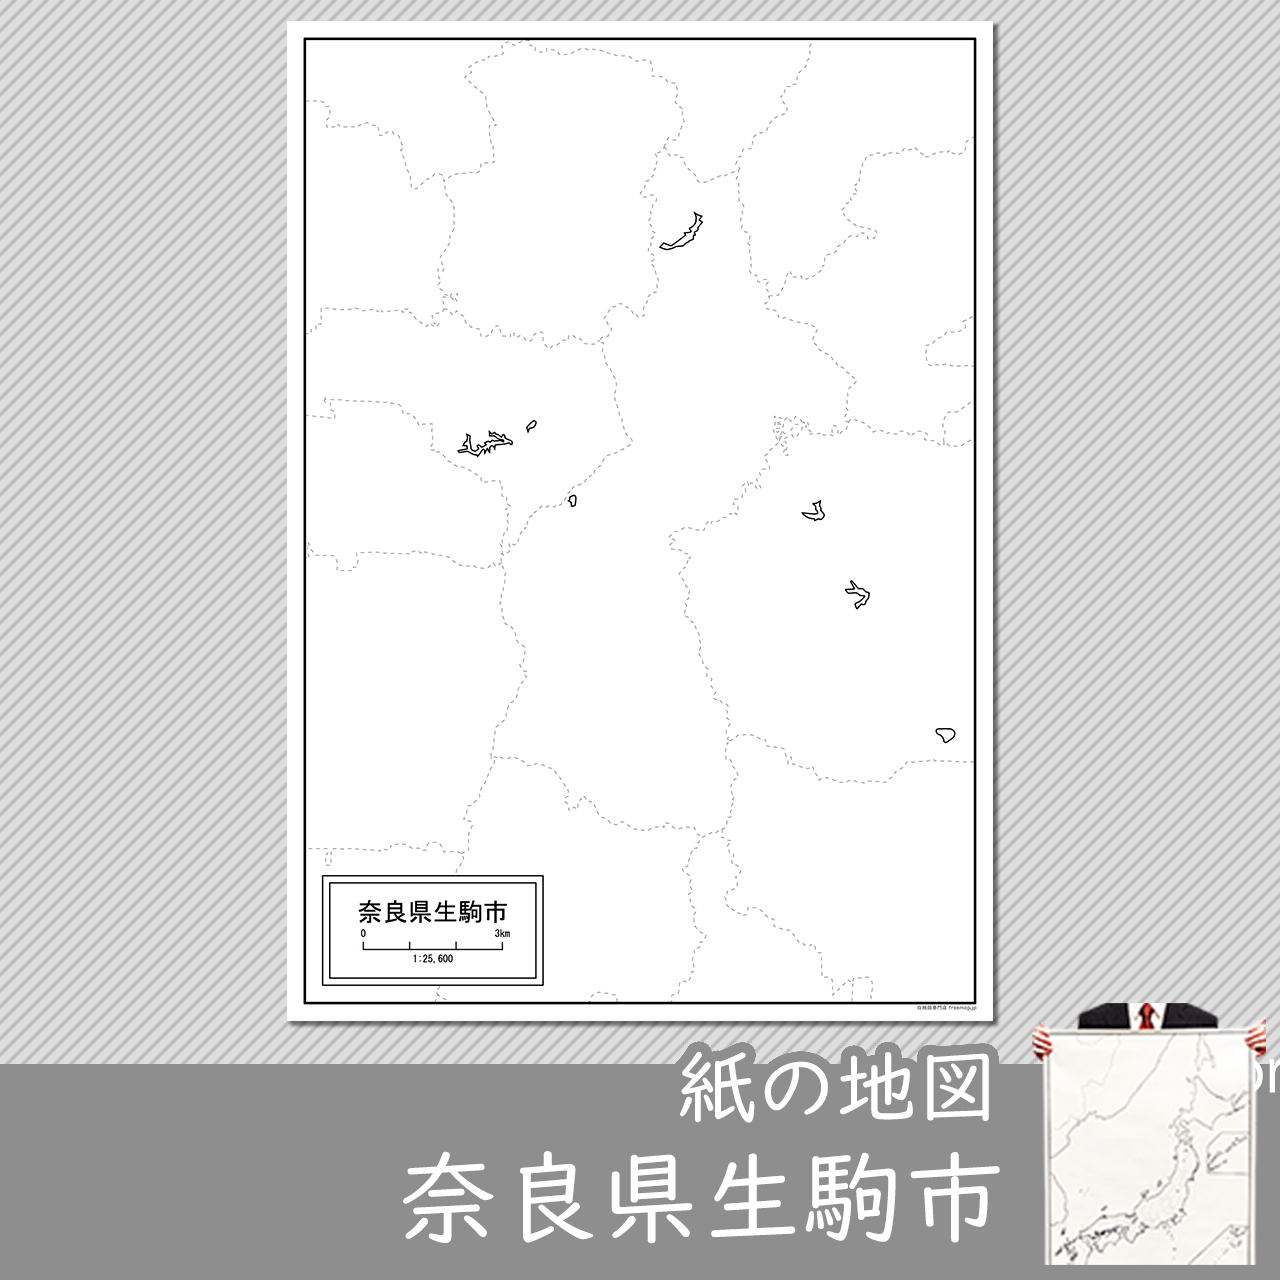 生駒市の紙の白地図のサムネイル